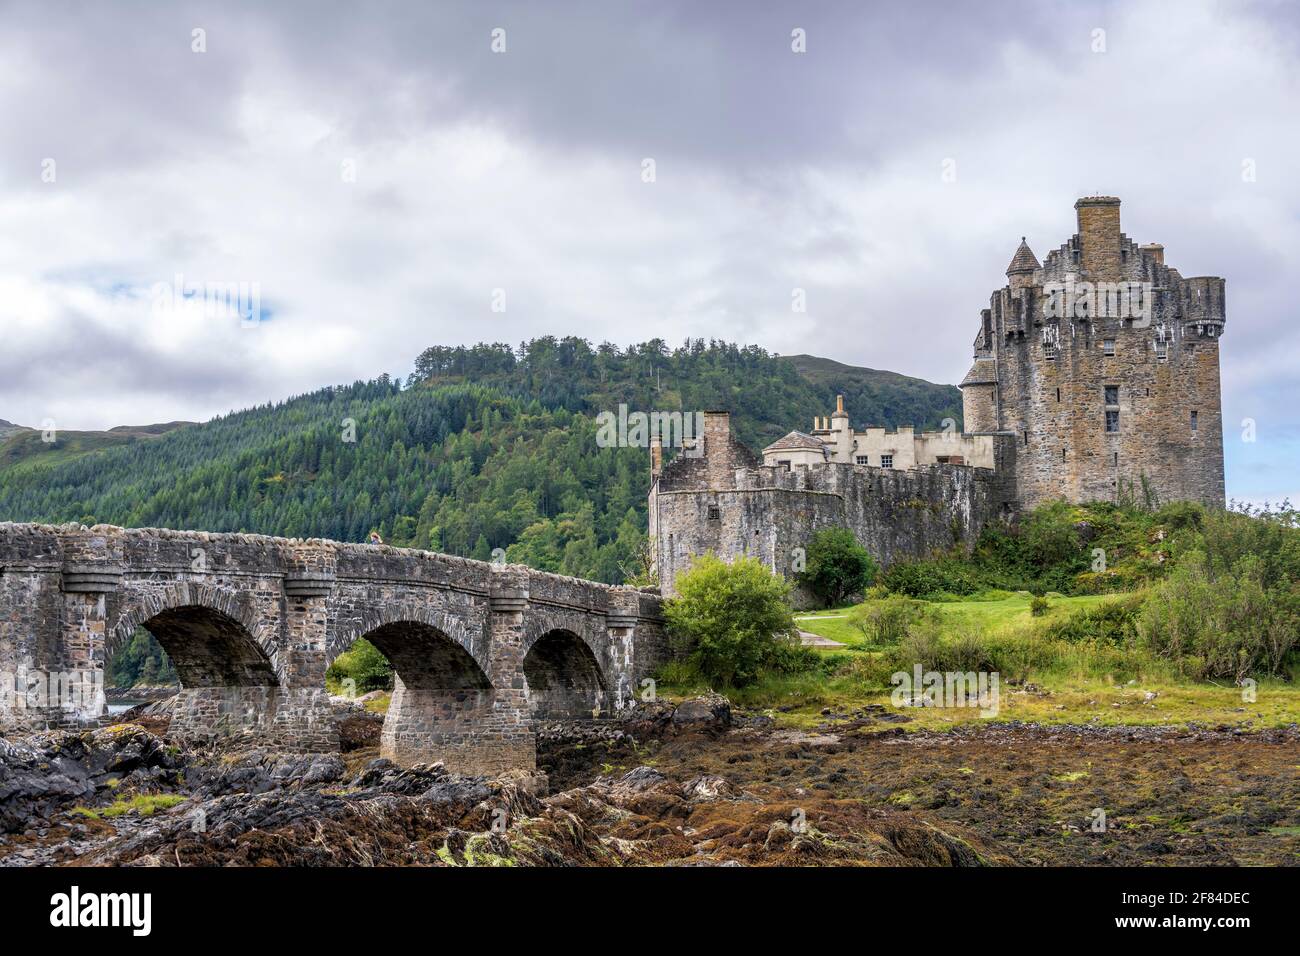 Eilean Donan Castle bei Dornie, Western Ross, Loch Duich, West Highlands, schottisches Hochland, Schottland, Grossbritannien Foto Stock